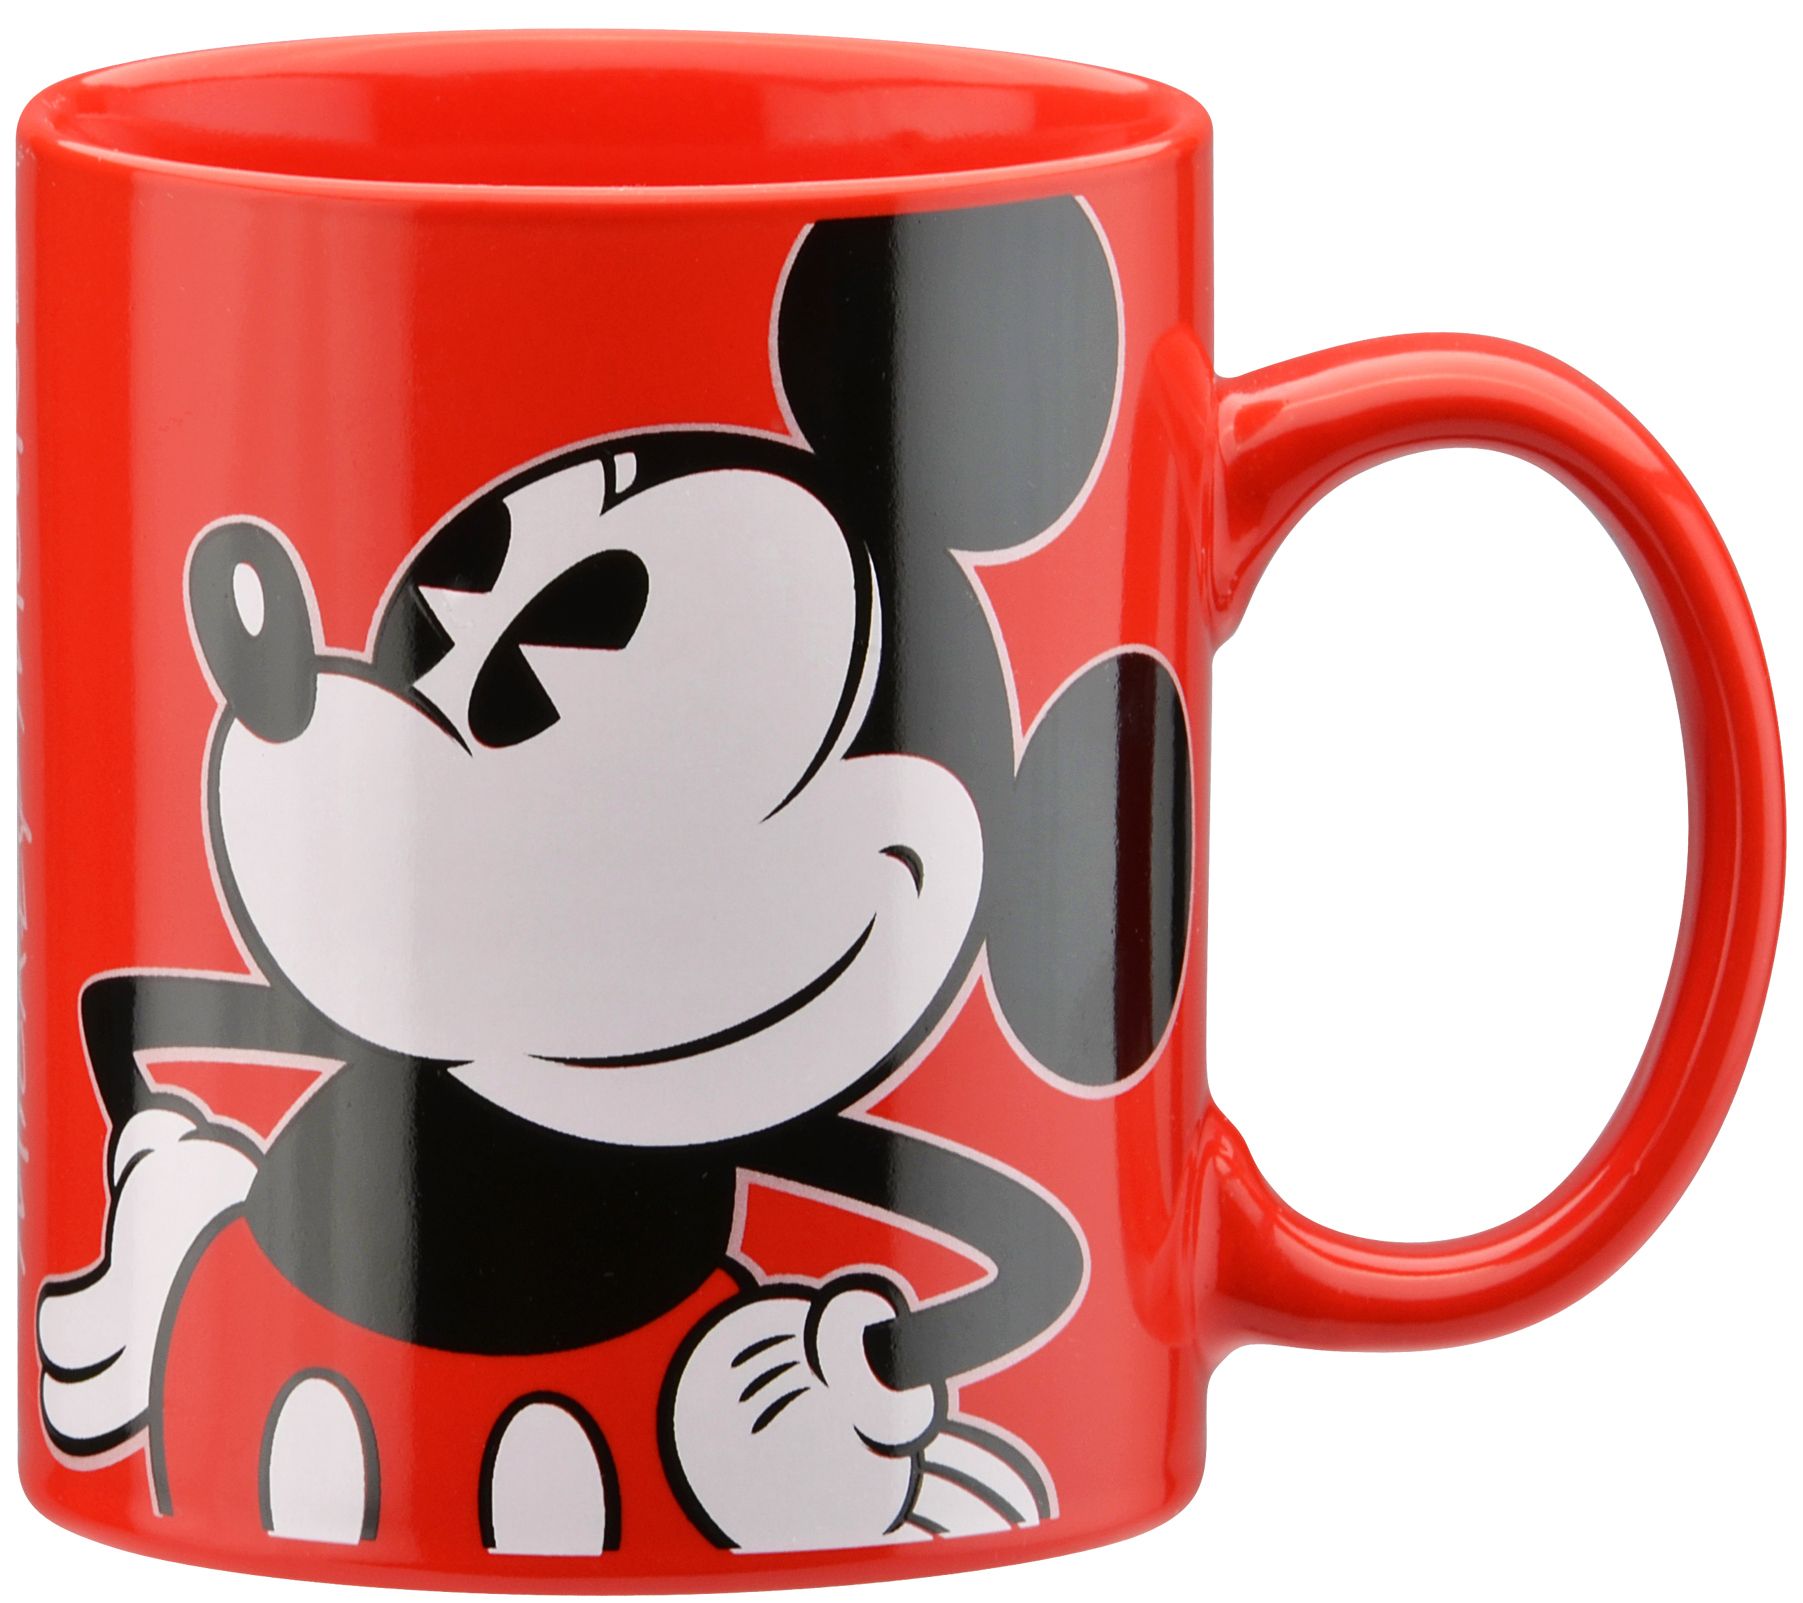 Mickey Mouse Mug Warmer with 12 Ounce Mug